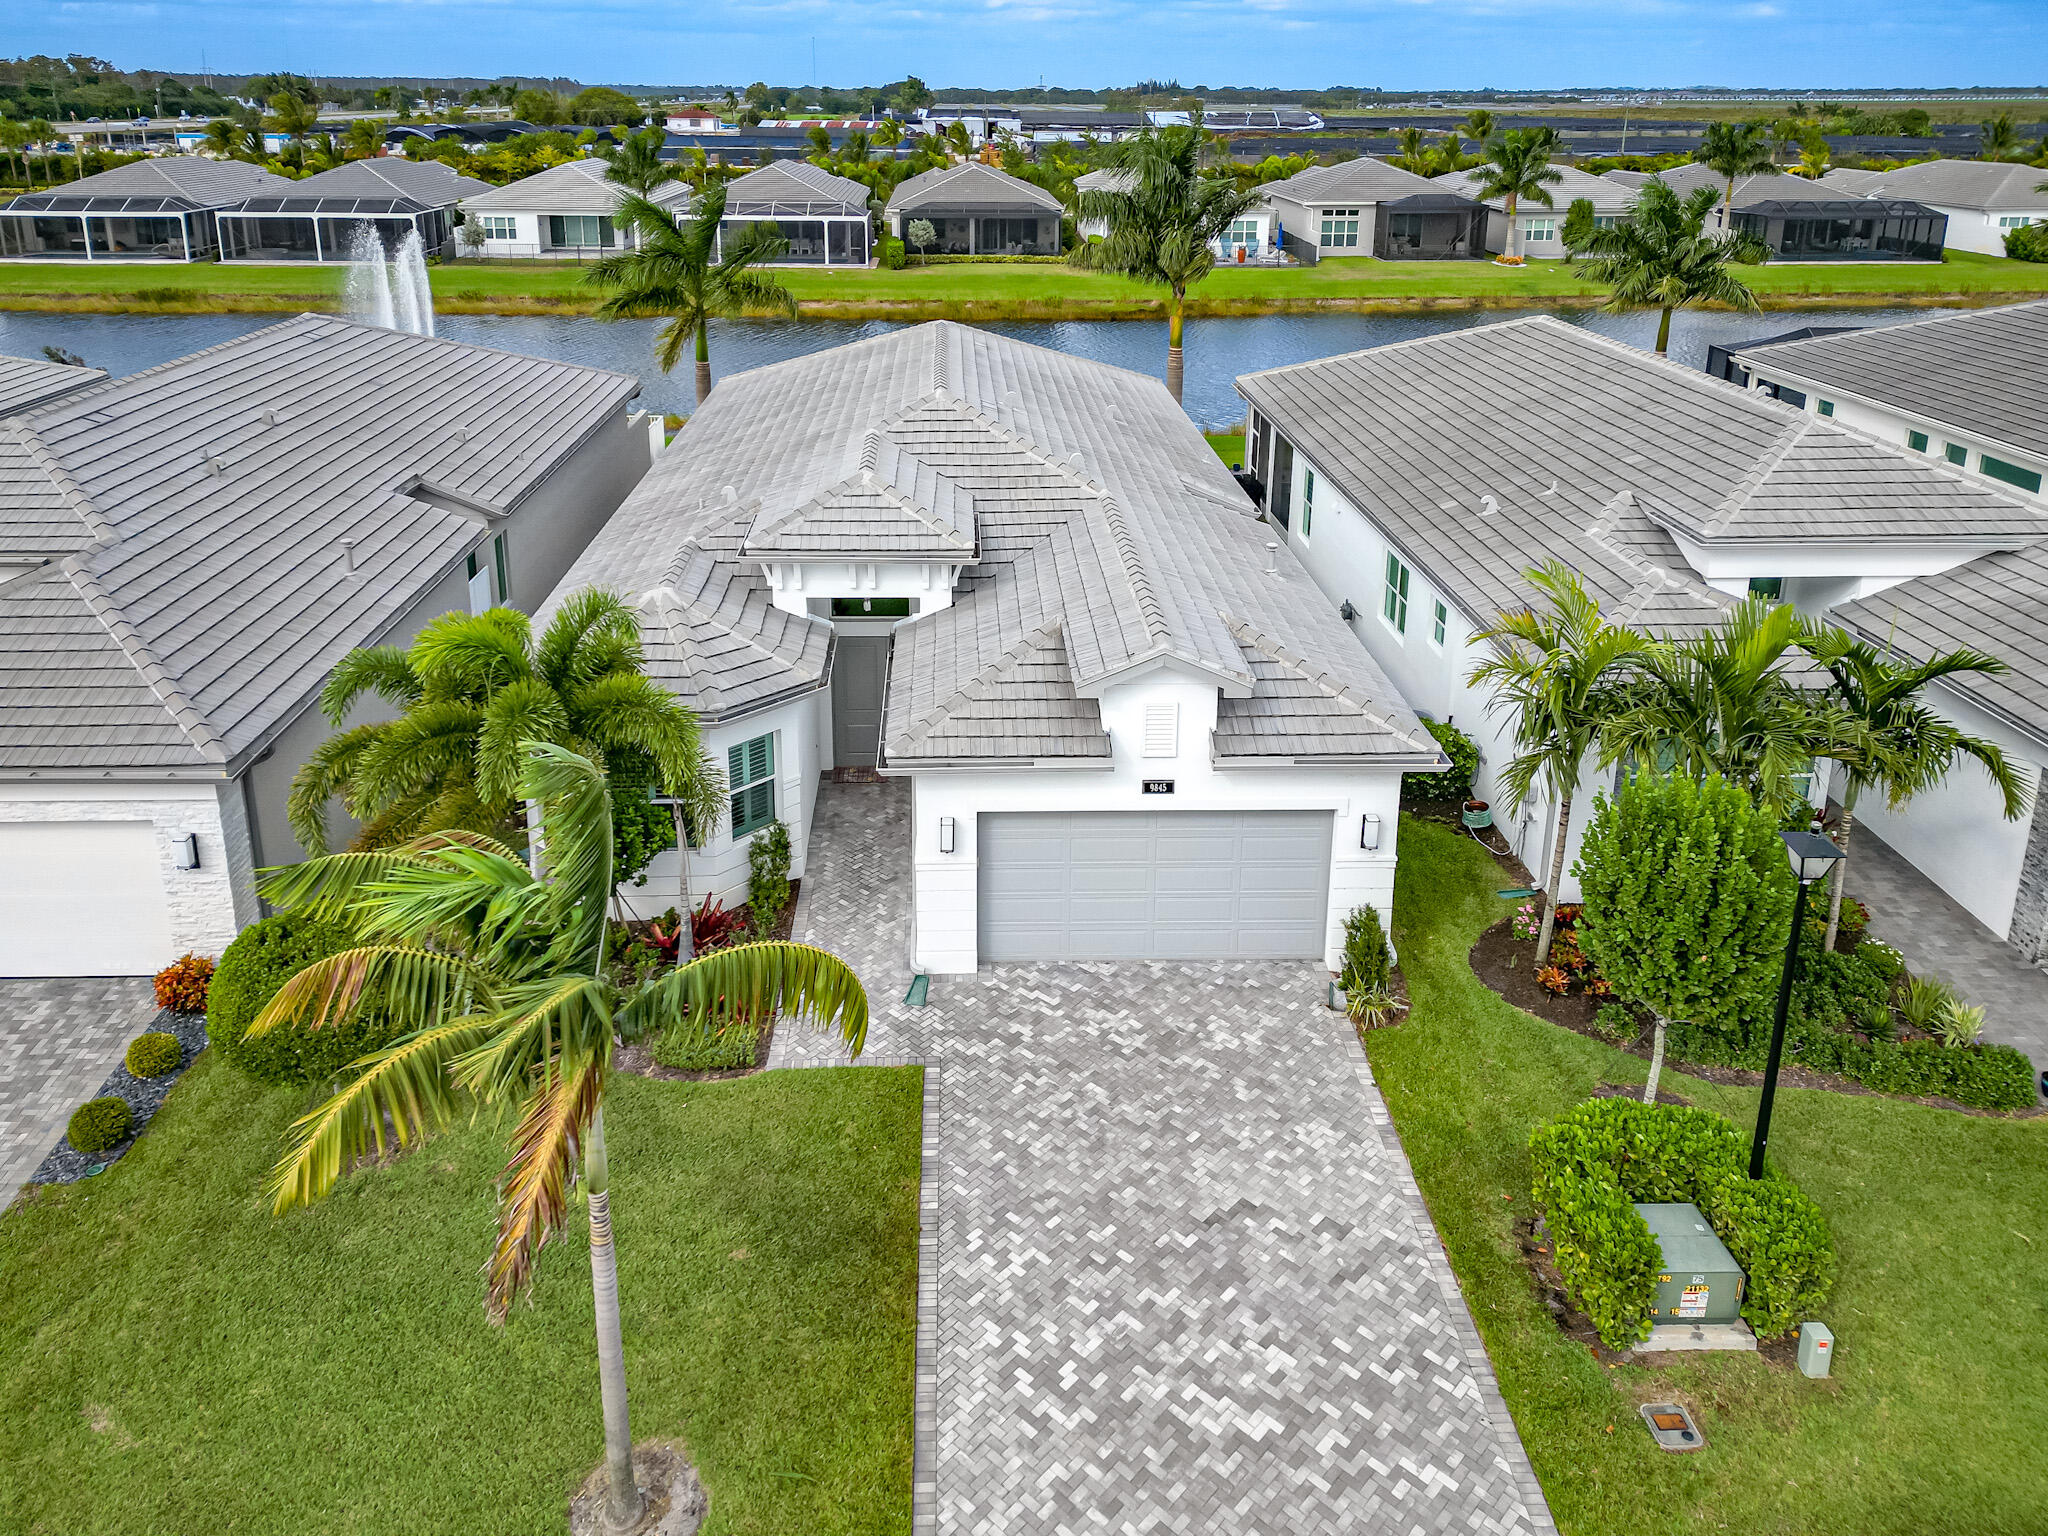 Property for Sale at 9845 Golden Dunes Lane, Boynton Beach, Palm Beach County, Florida - Bedrooms: 4 
Bathrooms: 3  - $1,075,000